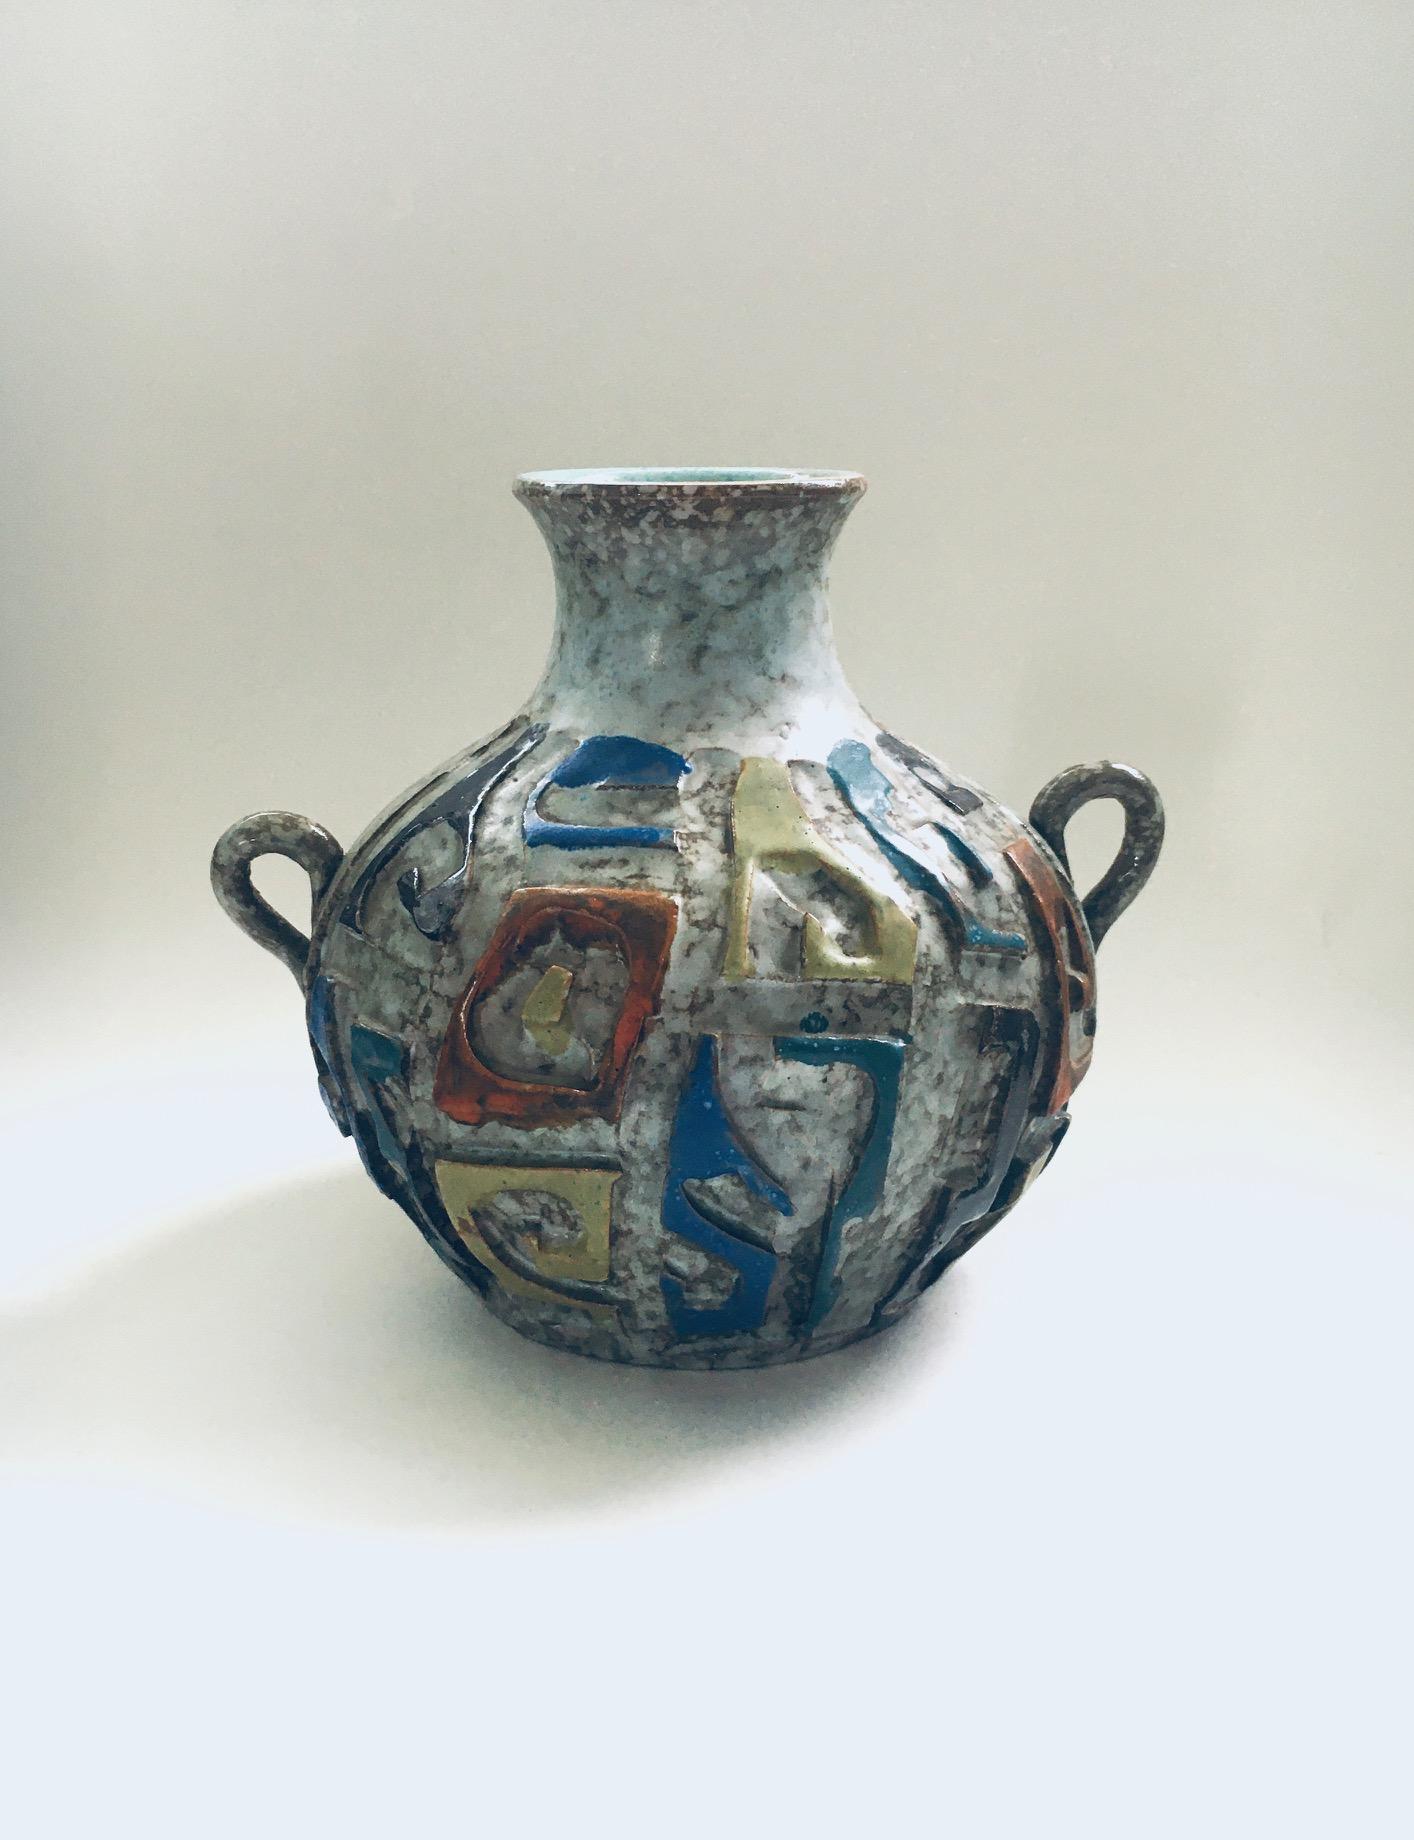 Vintage Midcentury Art Pottery Studio Hand Made Carved Handle Vase. Fabriqué en Espagne, années 1960. Vase artisanal de style brutaliste avec sous-glaçure grise et glaçures bleues, oranges, jaunes verdâtres et brunes. Un vase rare. En très bon état.